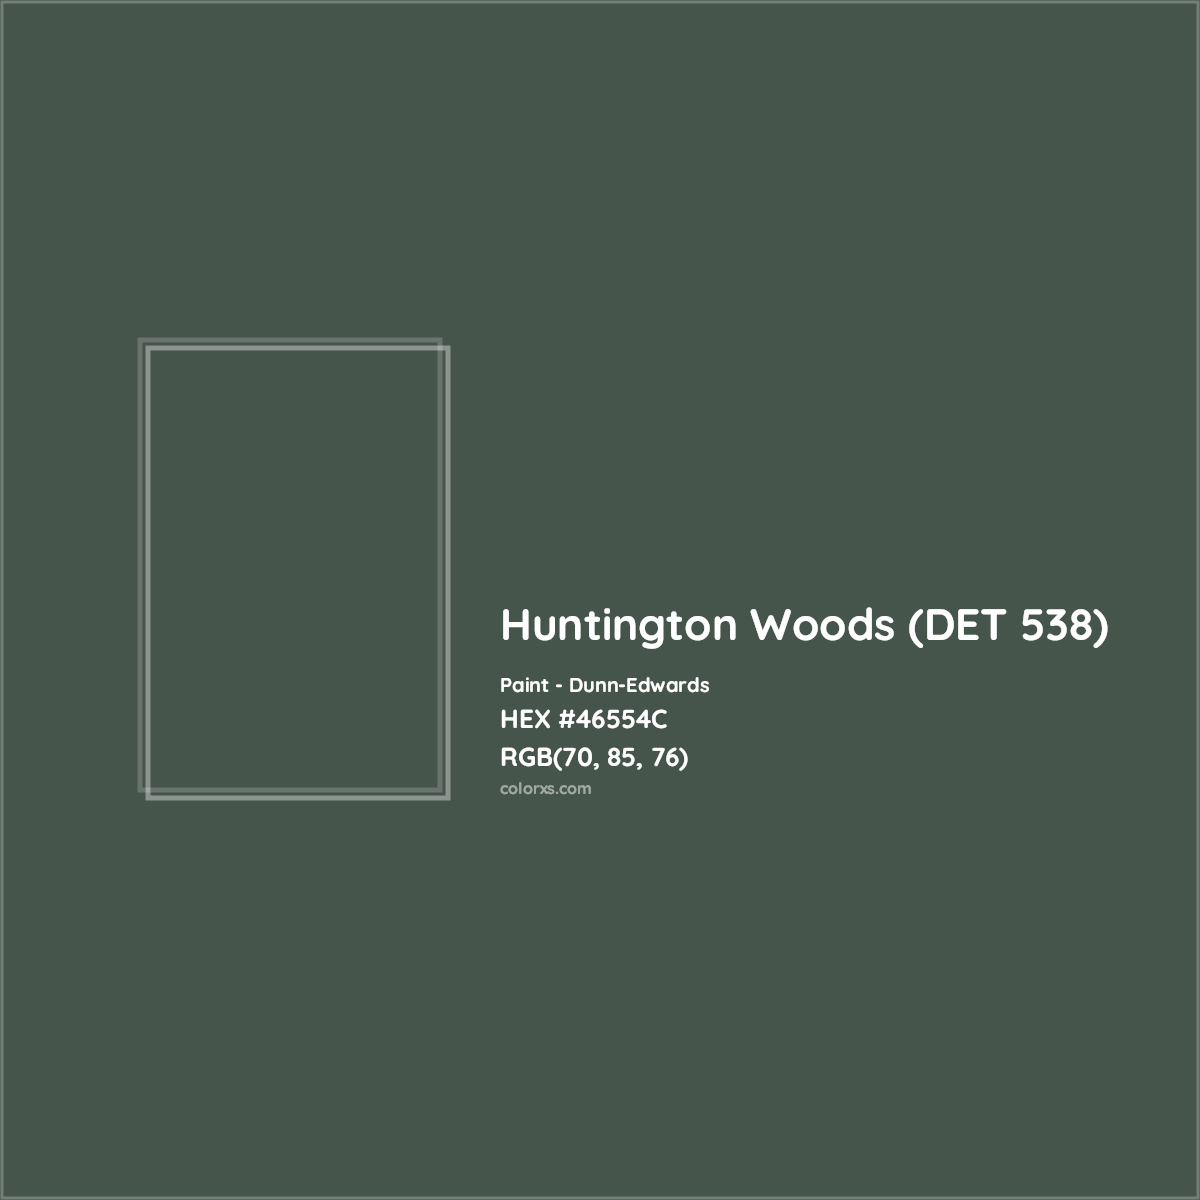 HEX #46554C Huntington Woods (DET 538) Paint Dunn-Edwards - Color Code